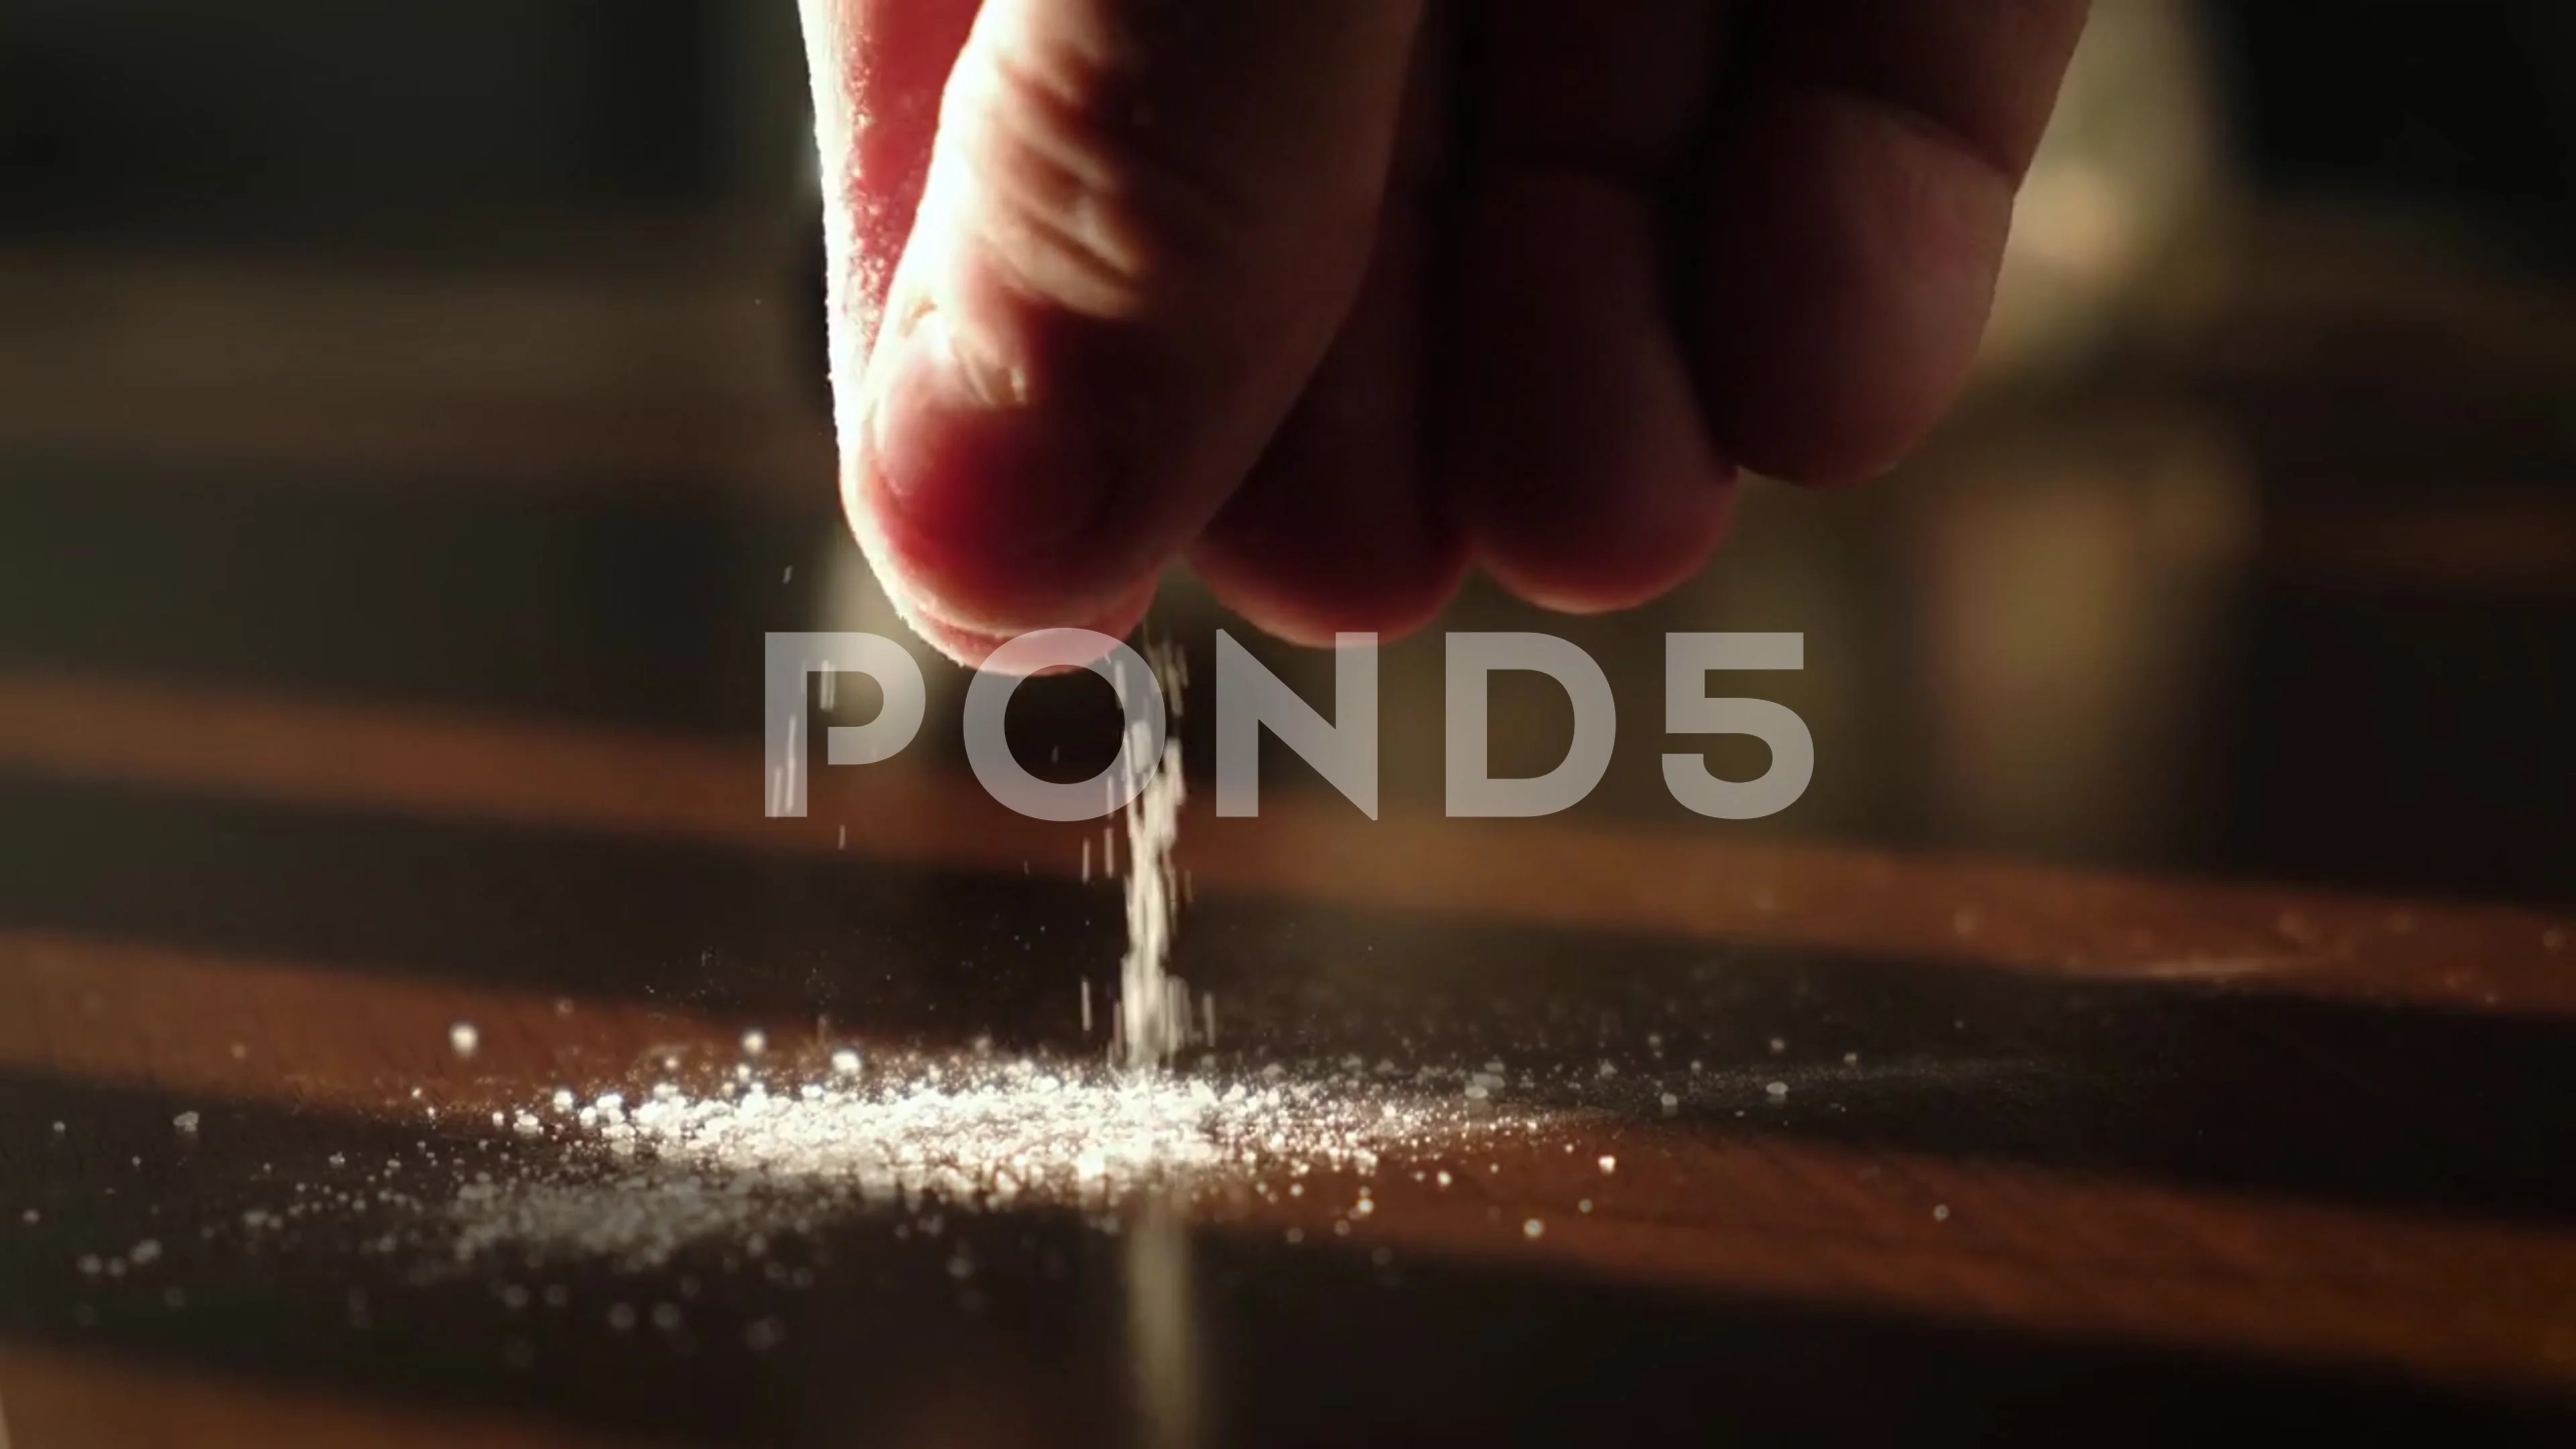 Criminal Concept Cocain Powder Black Table Cocaine Drug Powder